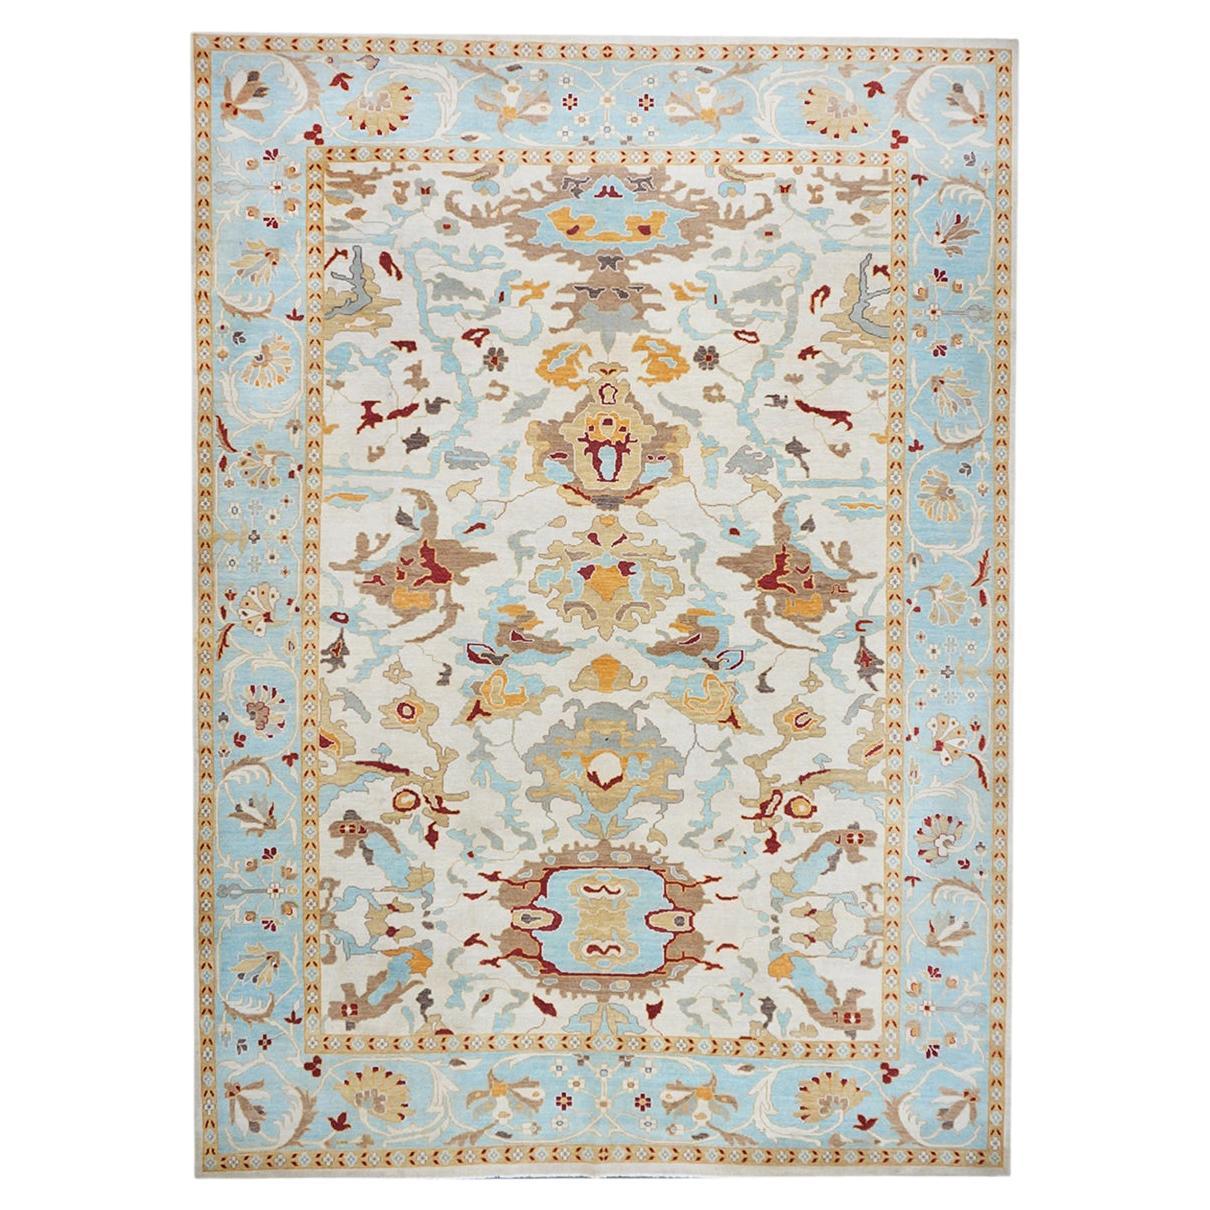 Sultanabad Master 10x14 Blauer, elfenbeinfarbener und orangefarbener handgefertigter Teppich, 21. Jahrhundert